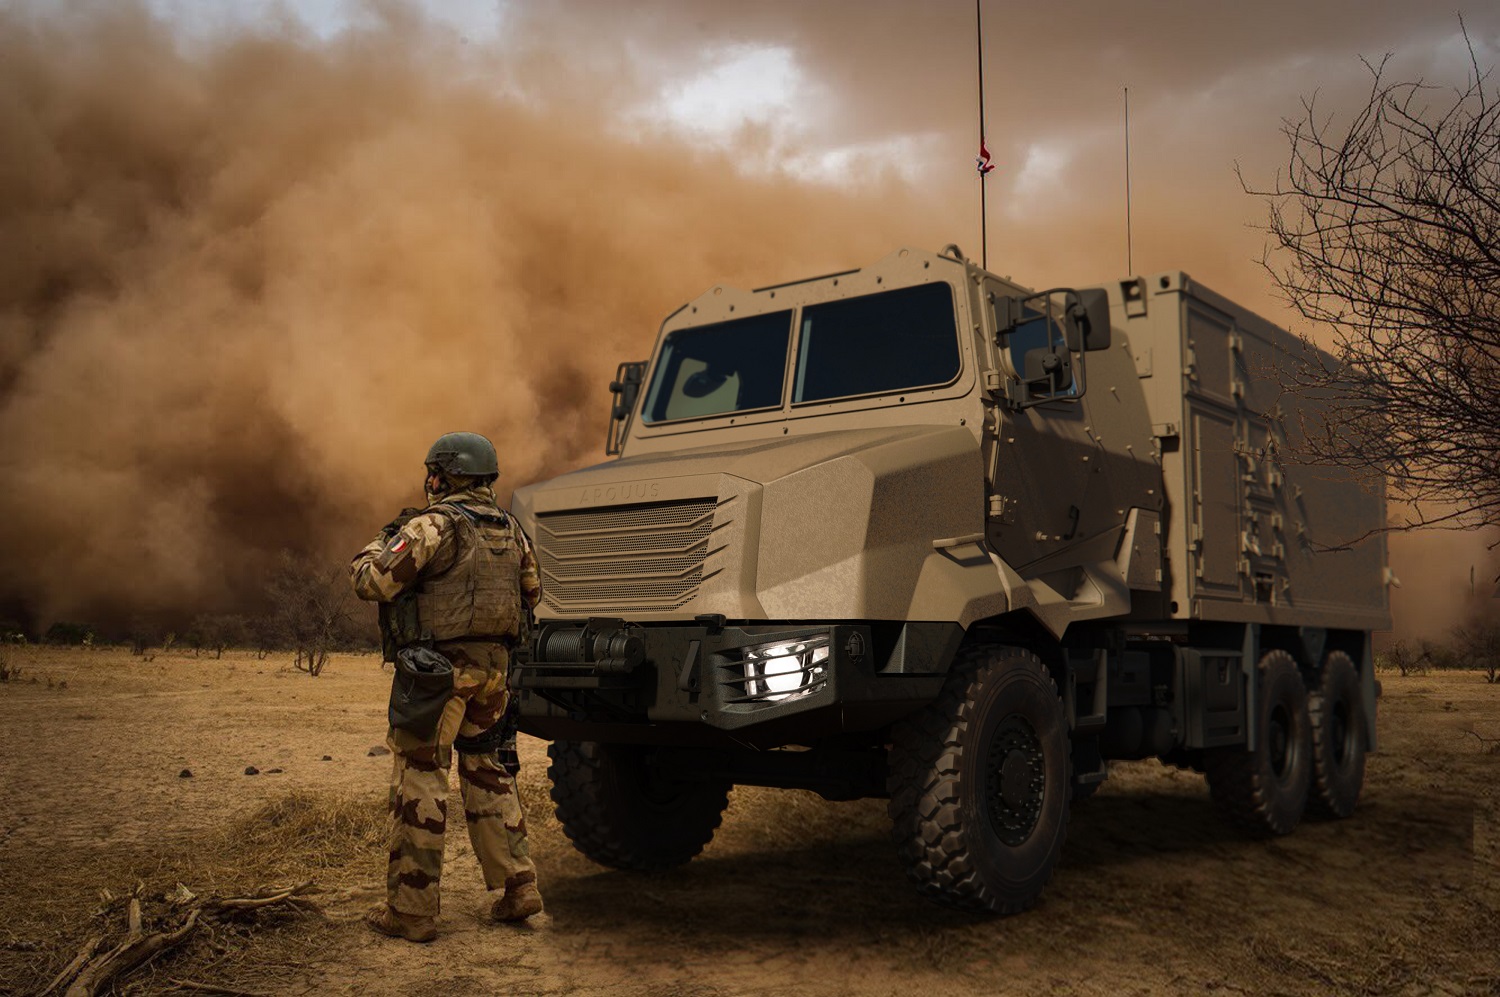 Arquus Launches ARMIS Military Truck Range